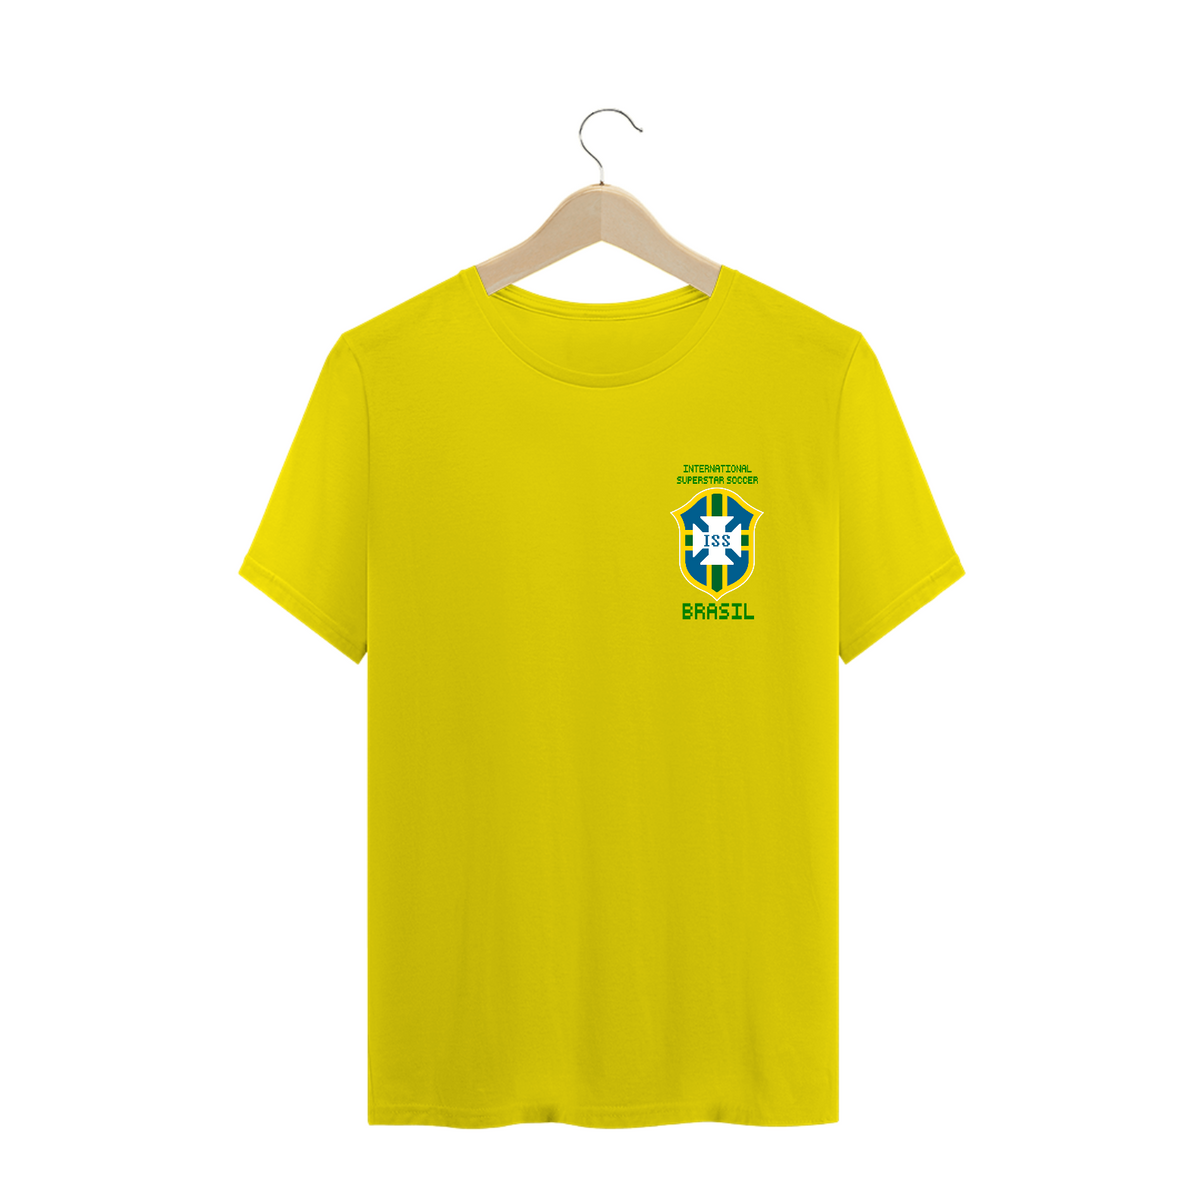 Nome do produto: Camiseta Brasil International Superstar Soccer - Escudo